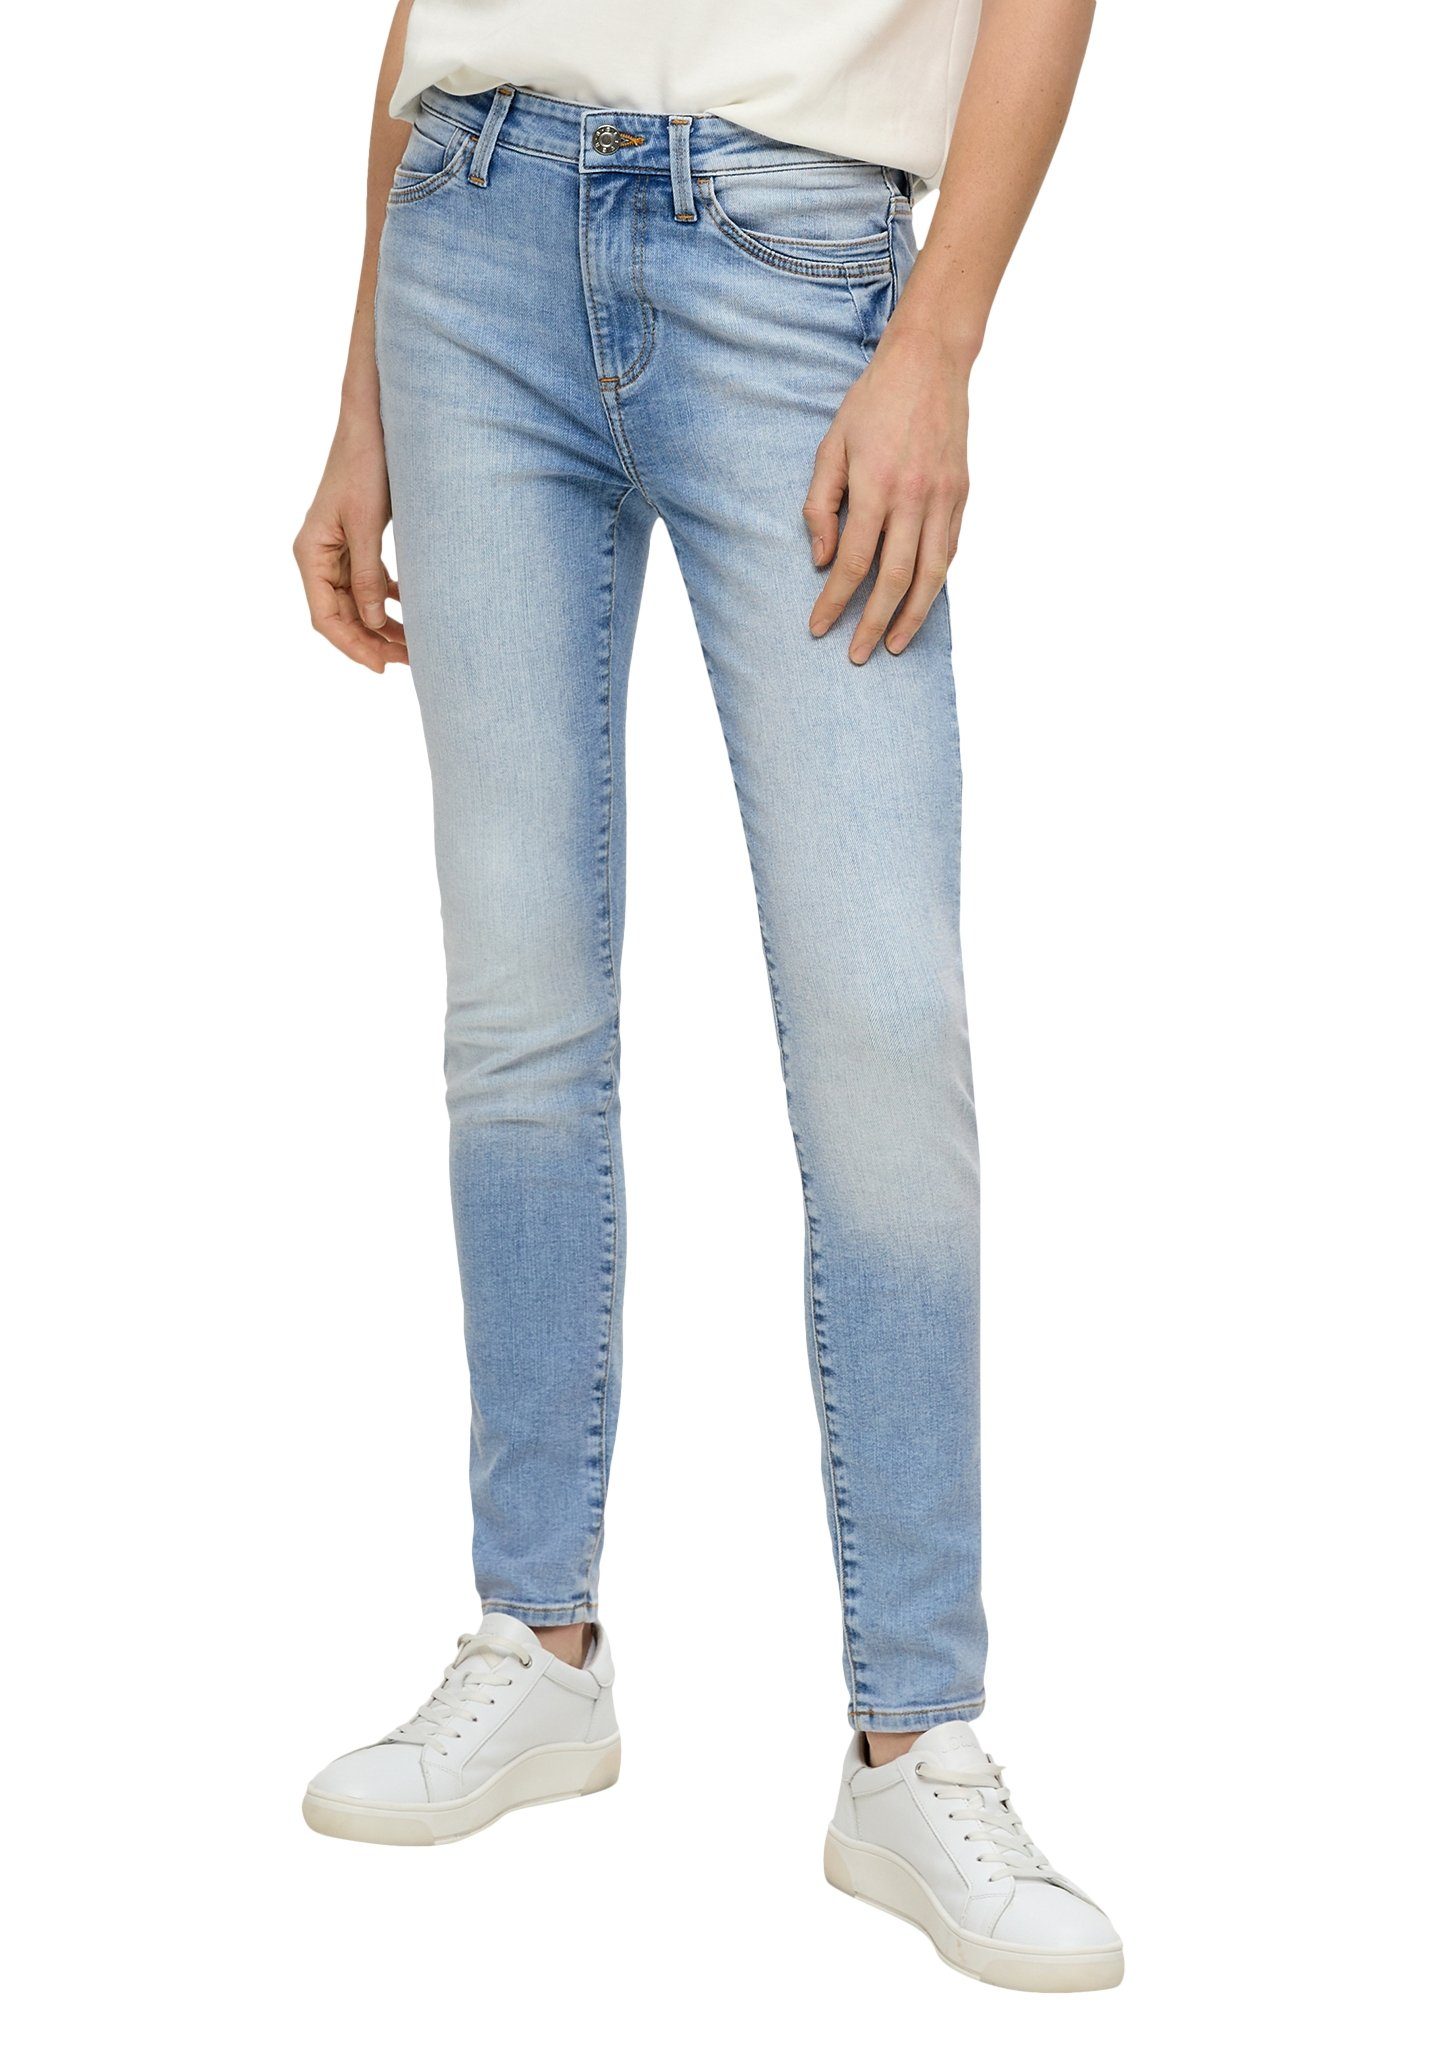 S.Oliver skinny jeans light blue